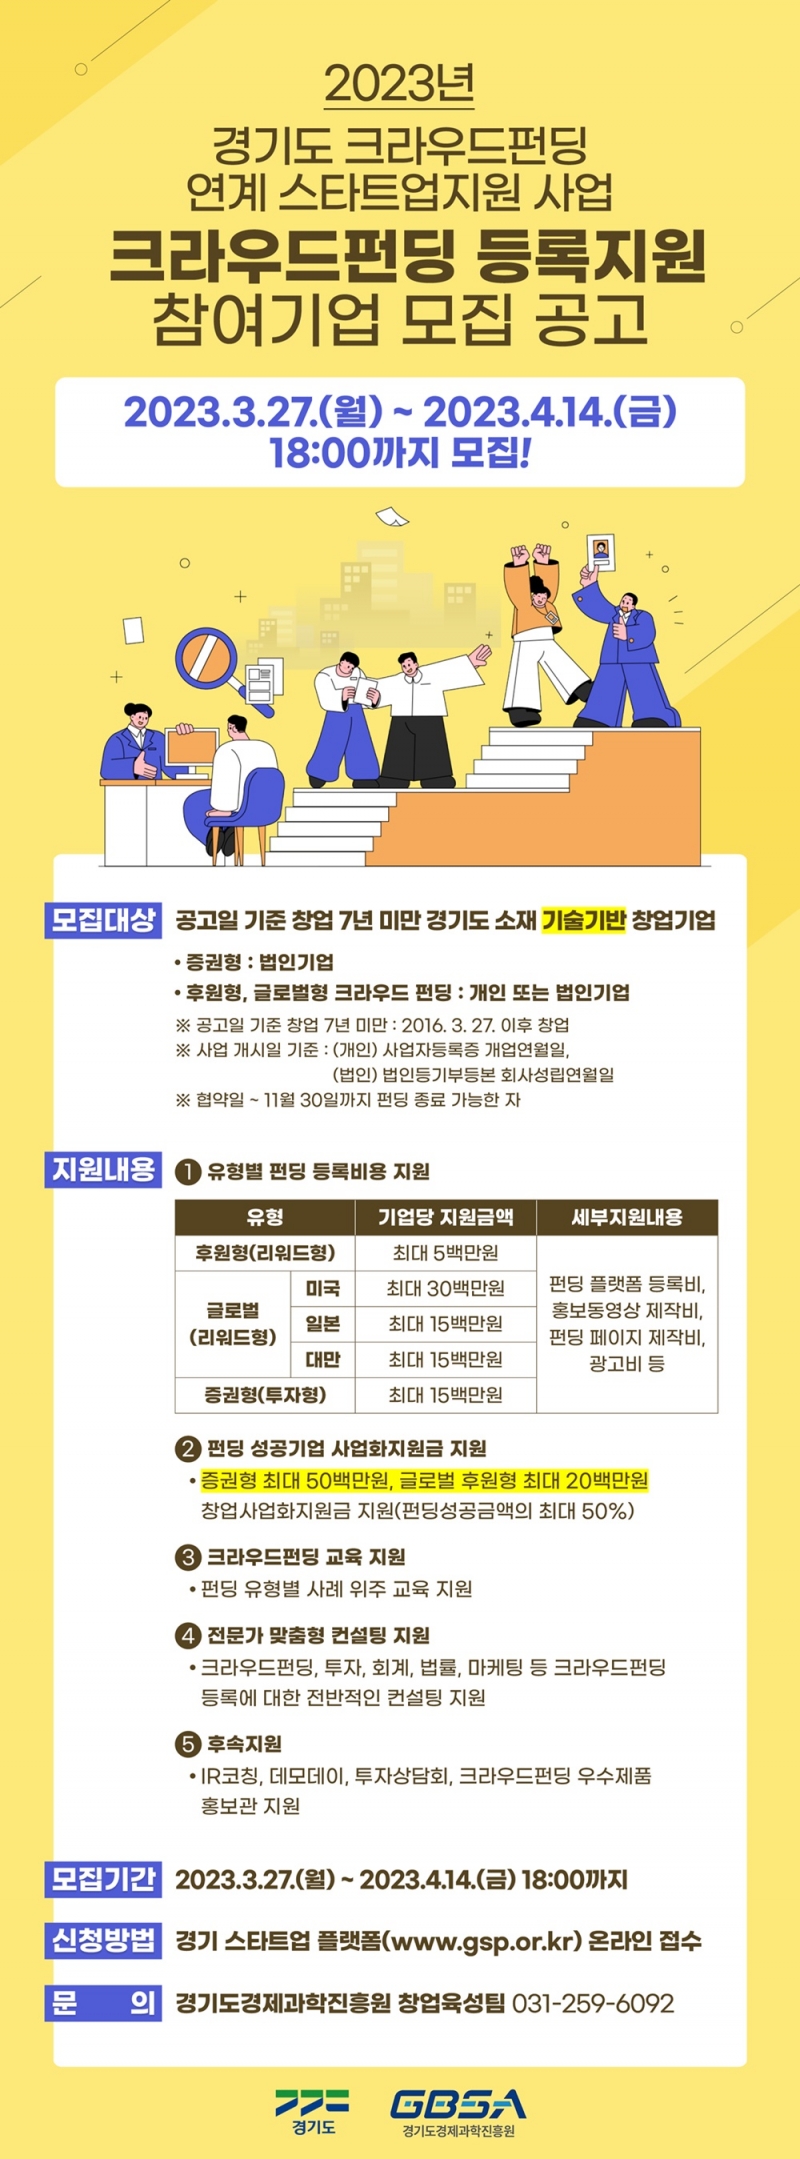 경기도, 크라우드펀딩으로 새싹기업(스타트업) 성장 촉진